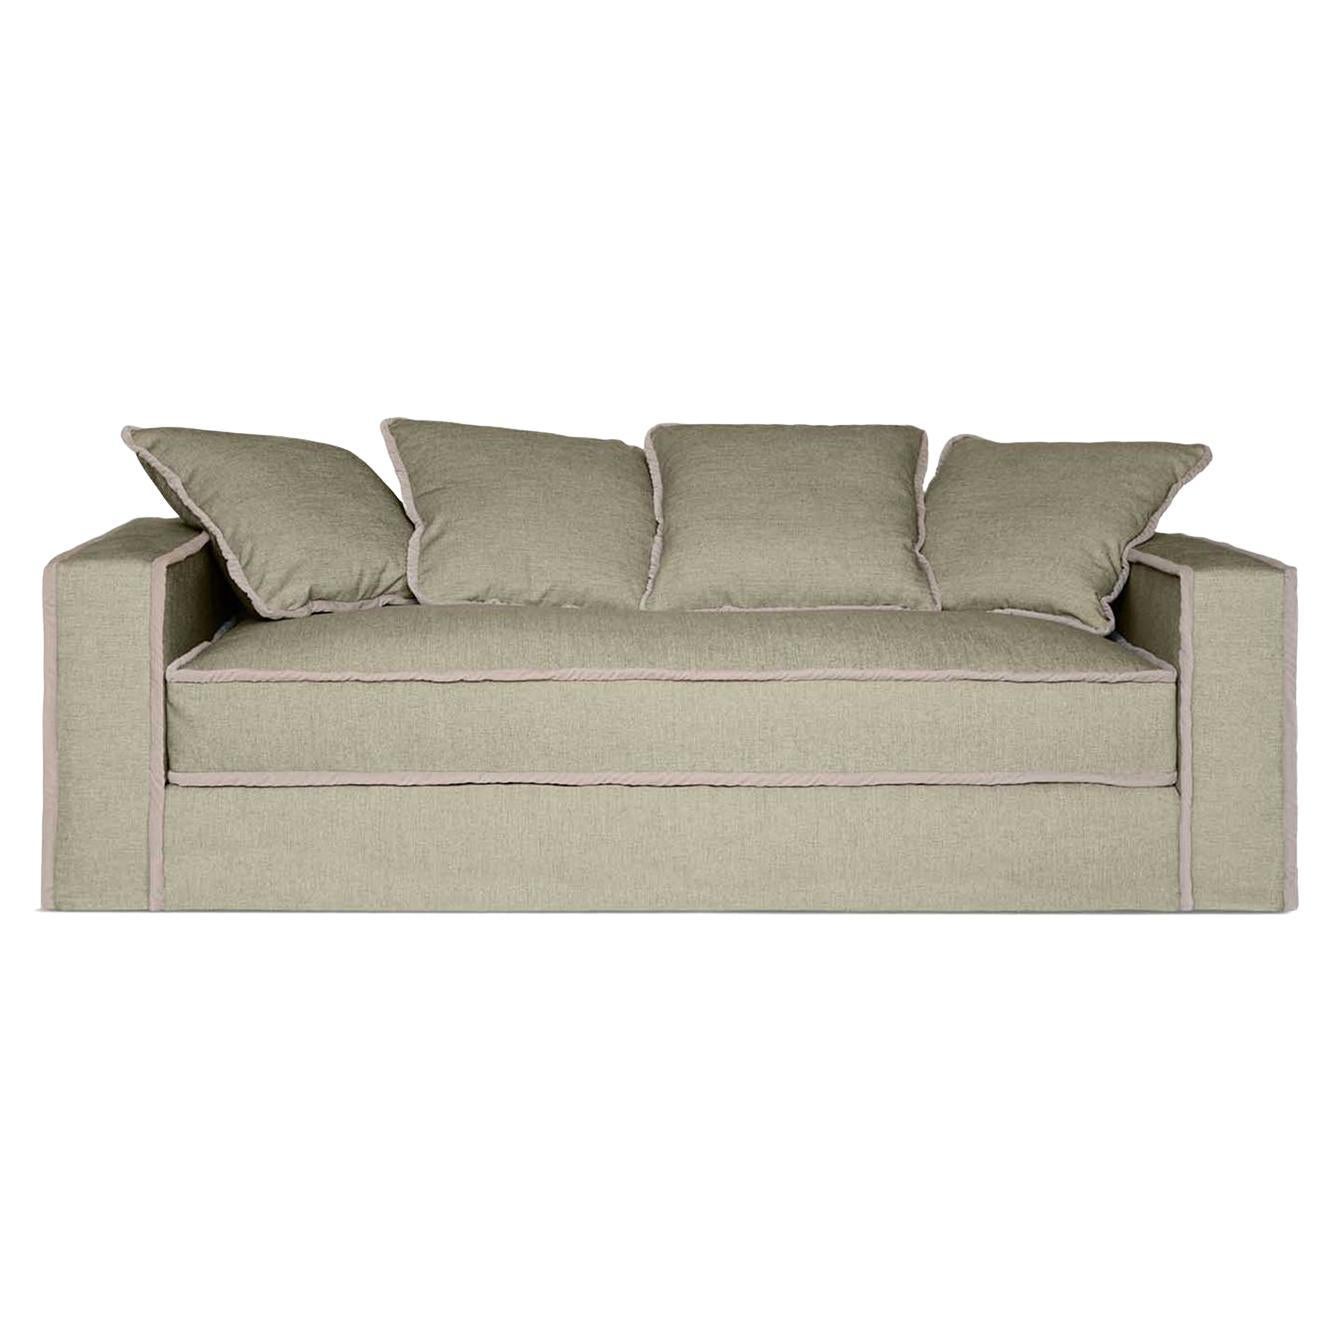 Raffaella Bio 2-Seater Sofa For Sale